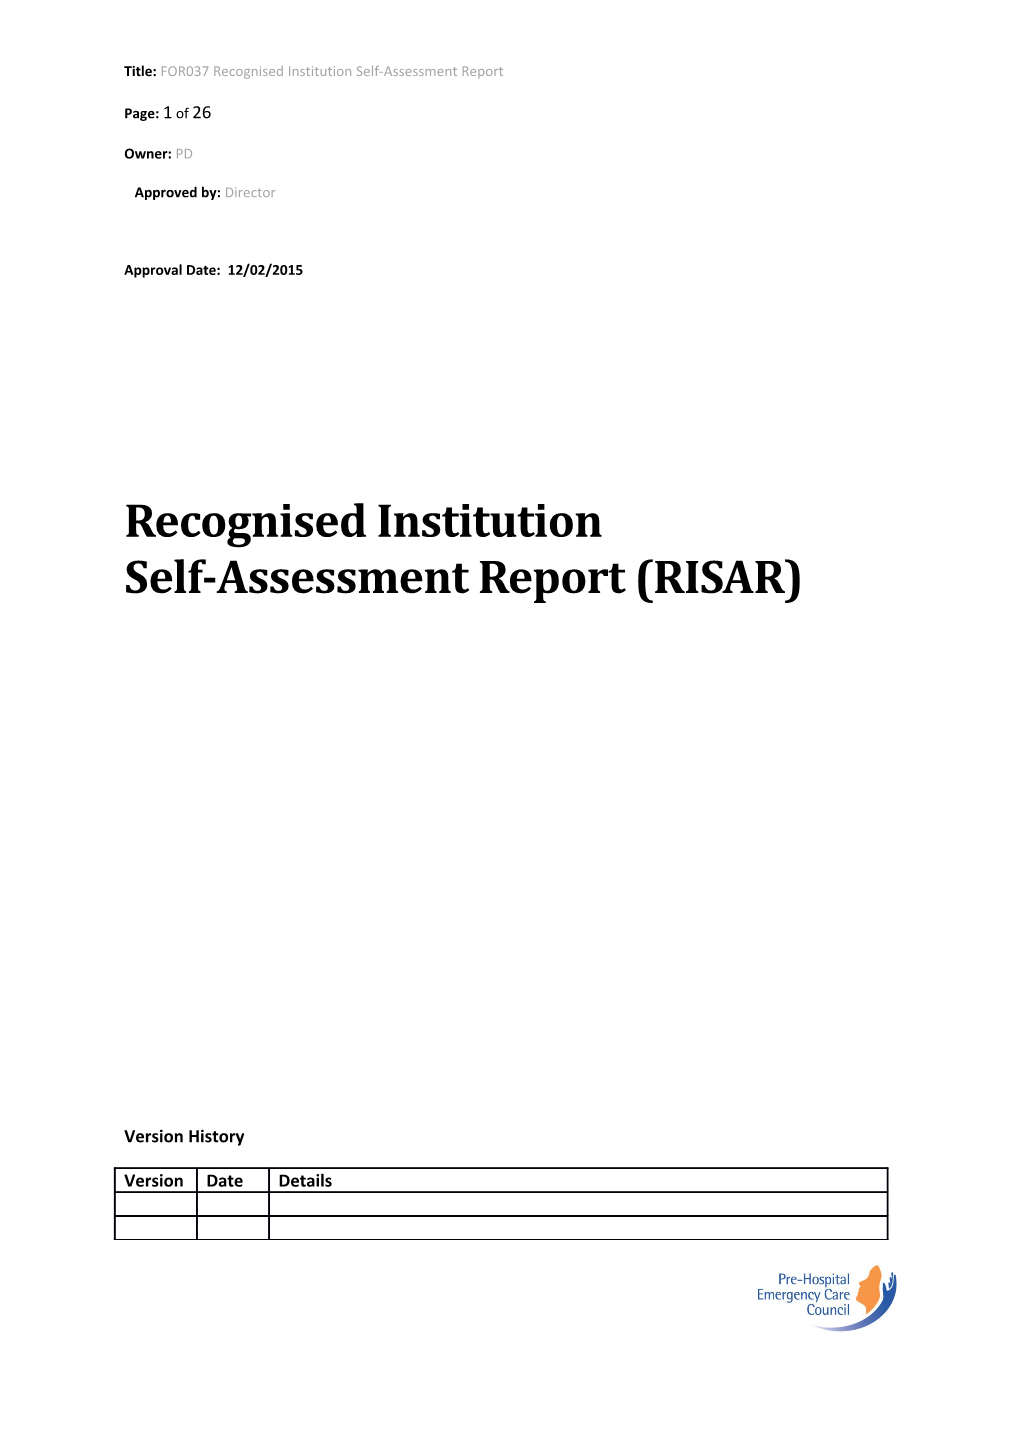 Self-Assessment Report (RISAR)